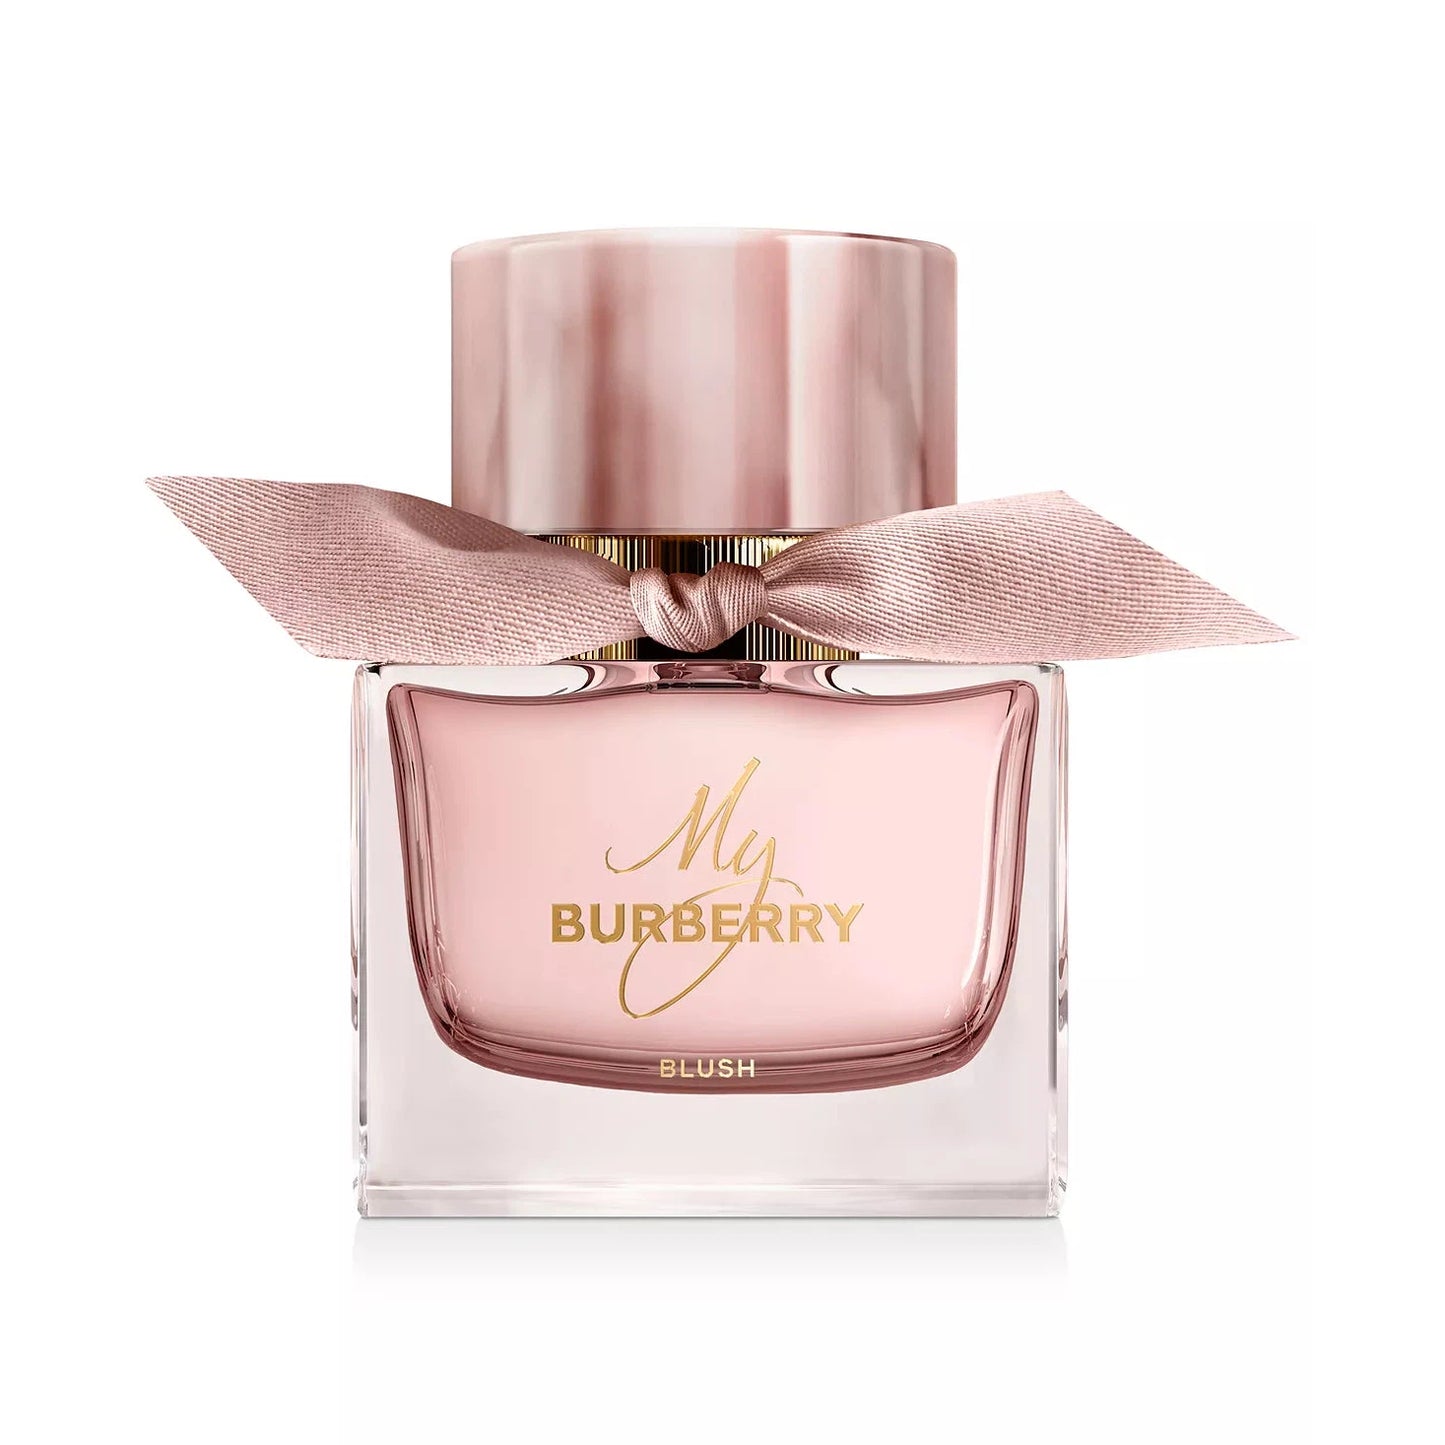 BURBERRY - My Burberry Blush Eau de Parfum, 3.0 oz